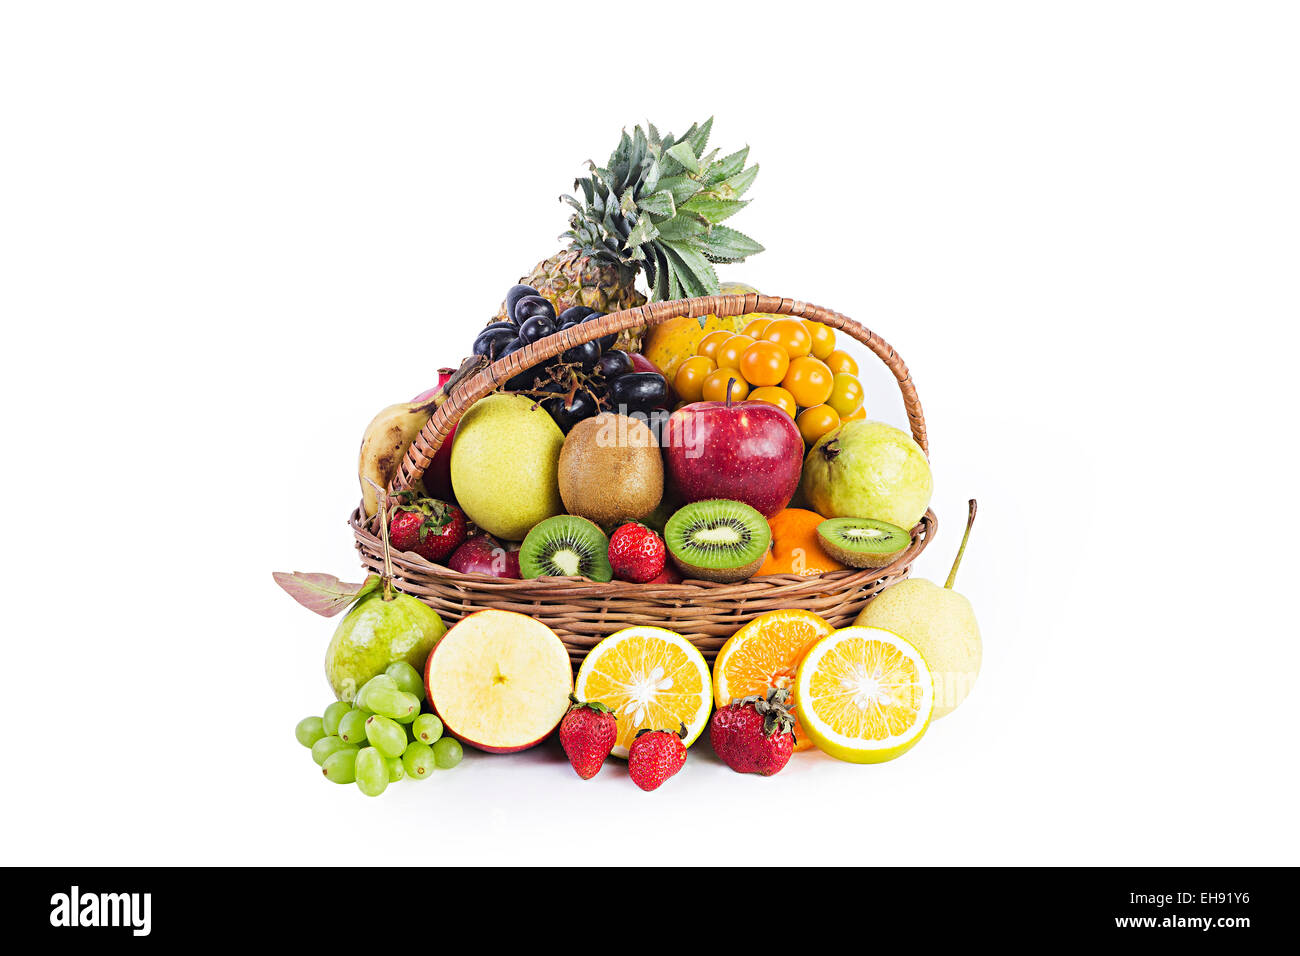 Abundancia de salud cesta de frutas nadie Foto de stock